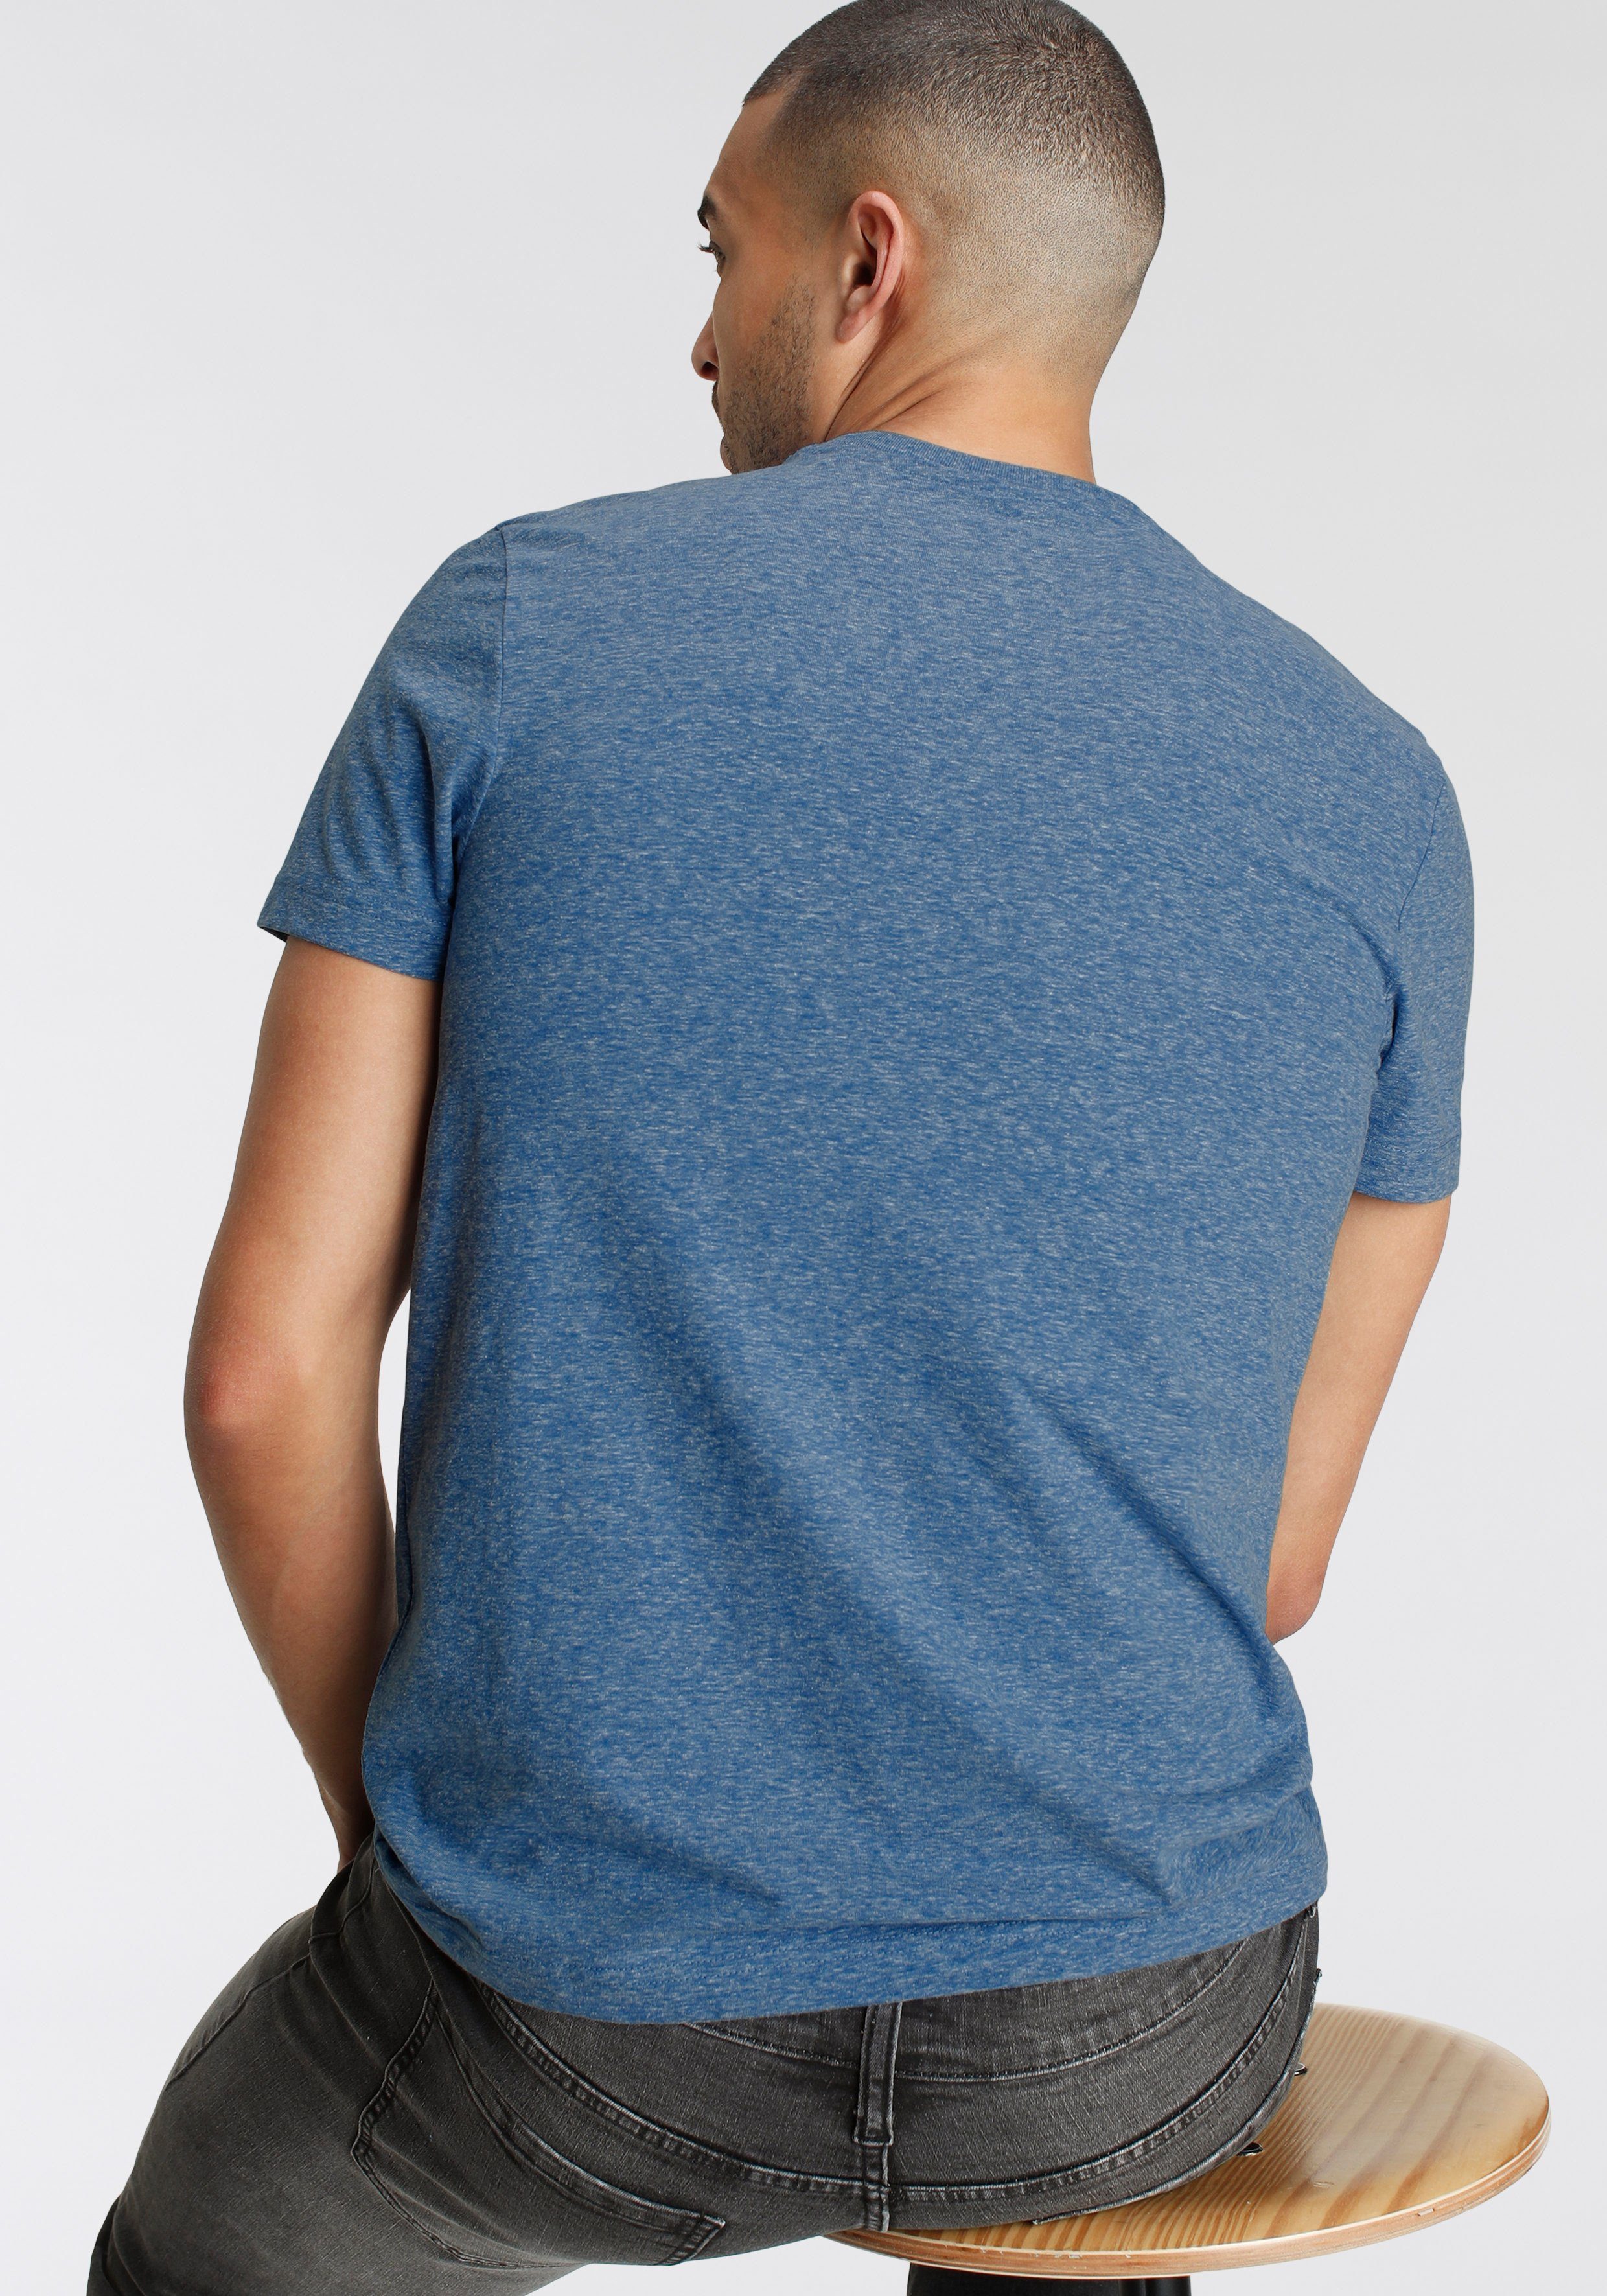 besonderer in AJC Print T-Shirt Melange Optik mit blau Logo meliert und